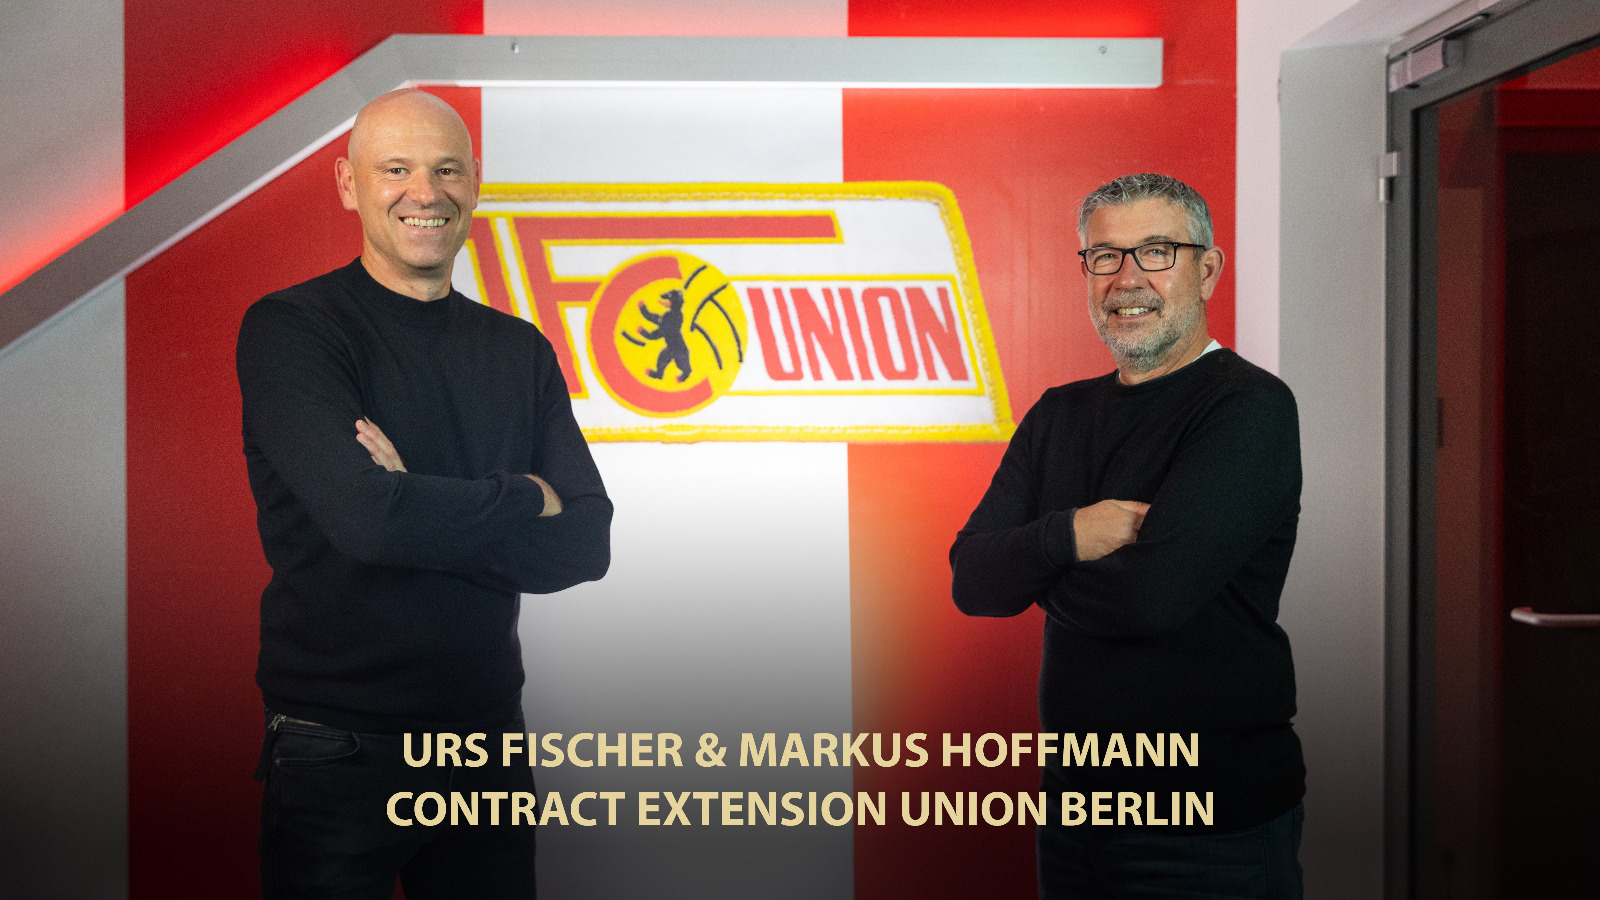 Urs Fischer’s contract extension